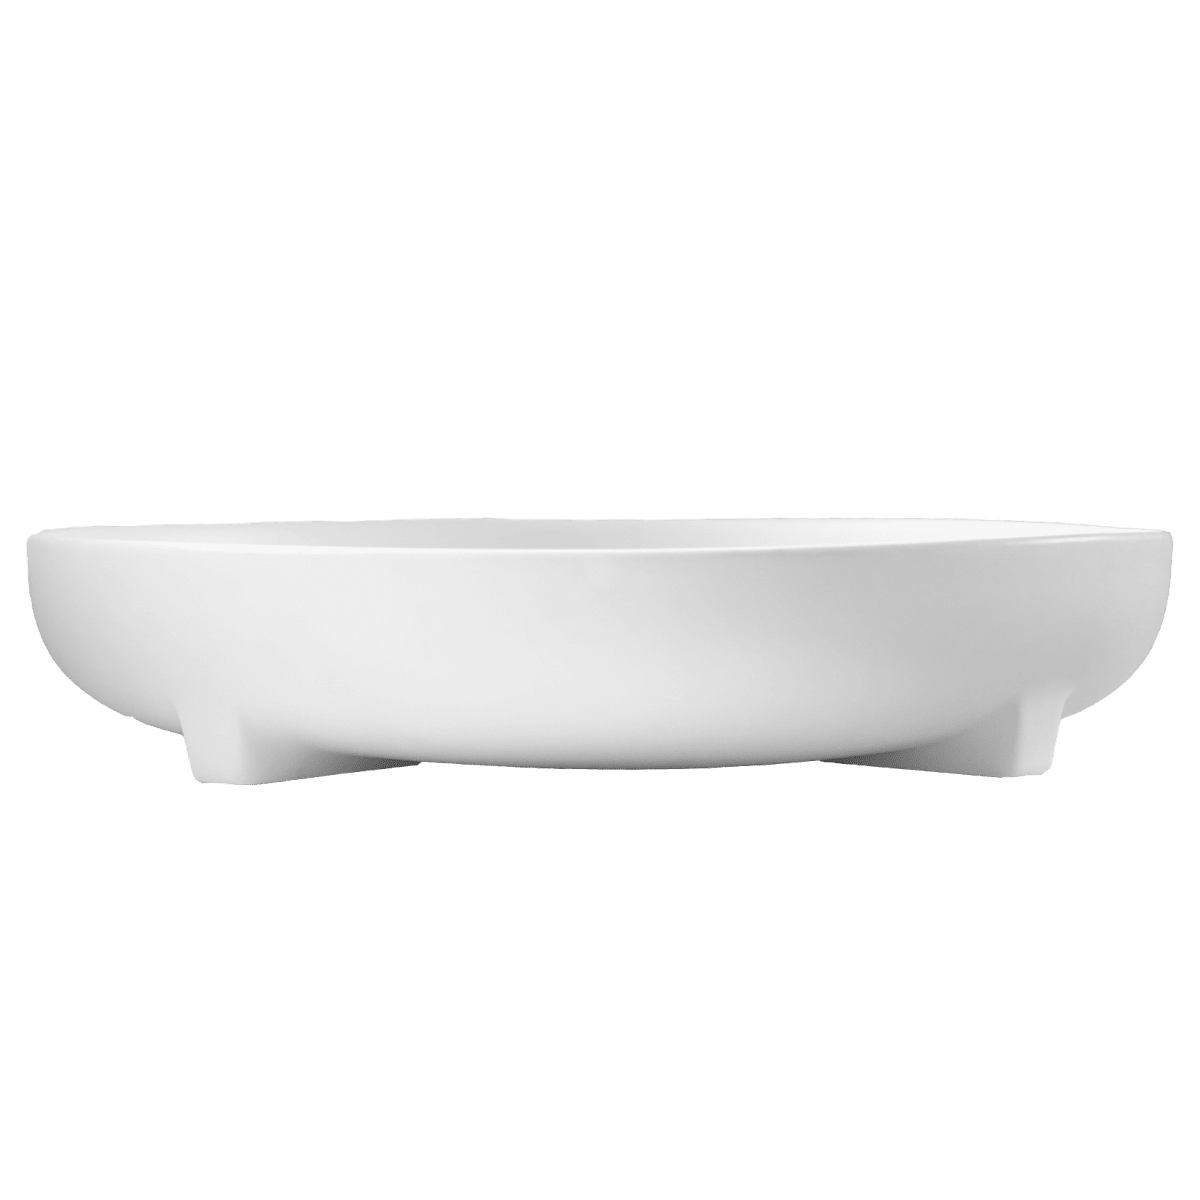 Schale Plus Plate aus Keramik - weiß